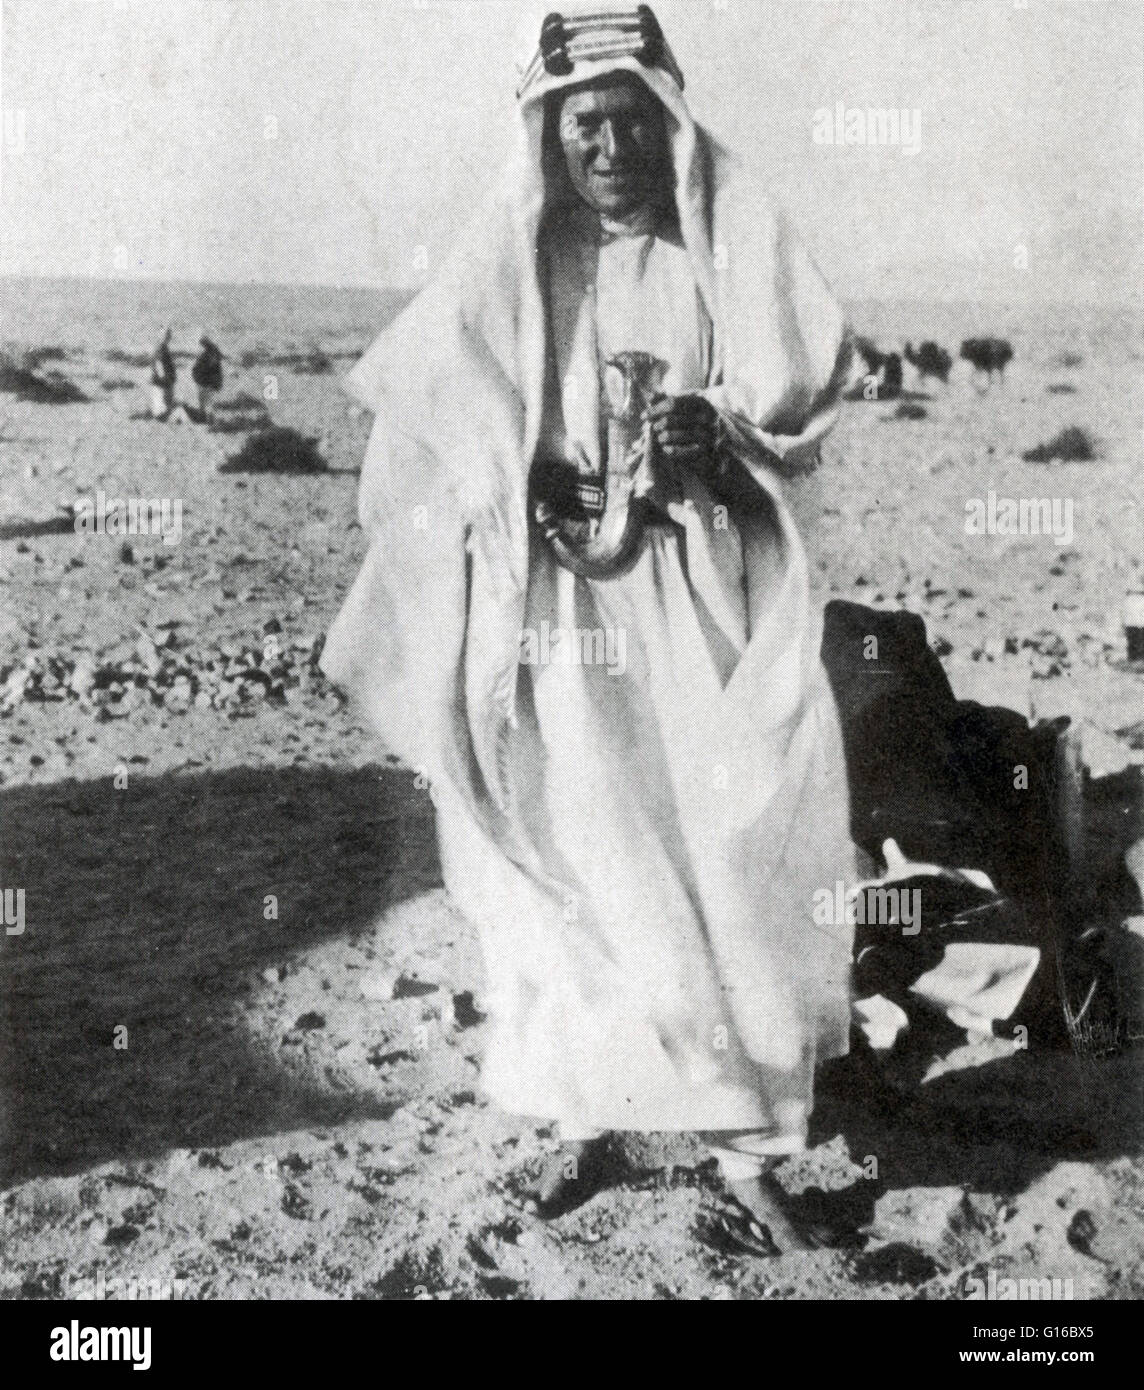 Undatierte Fotografie von t.e. Lawrence in traditionellen arabischen Gewand. Lawrence (16. August 1888 - 19. Mai 1935), bekannt als T. E. Lawrence, war ein britischer Offizier bekannt besonders für seine Verbindungsfunktion während des Sinai und Palesti Stockfoto